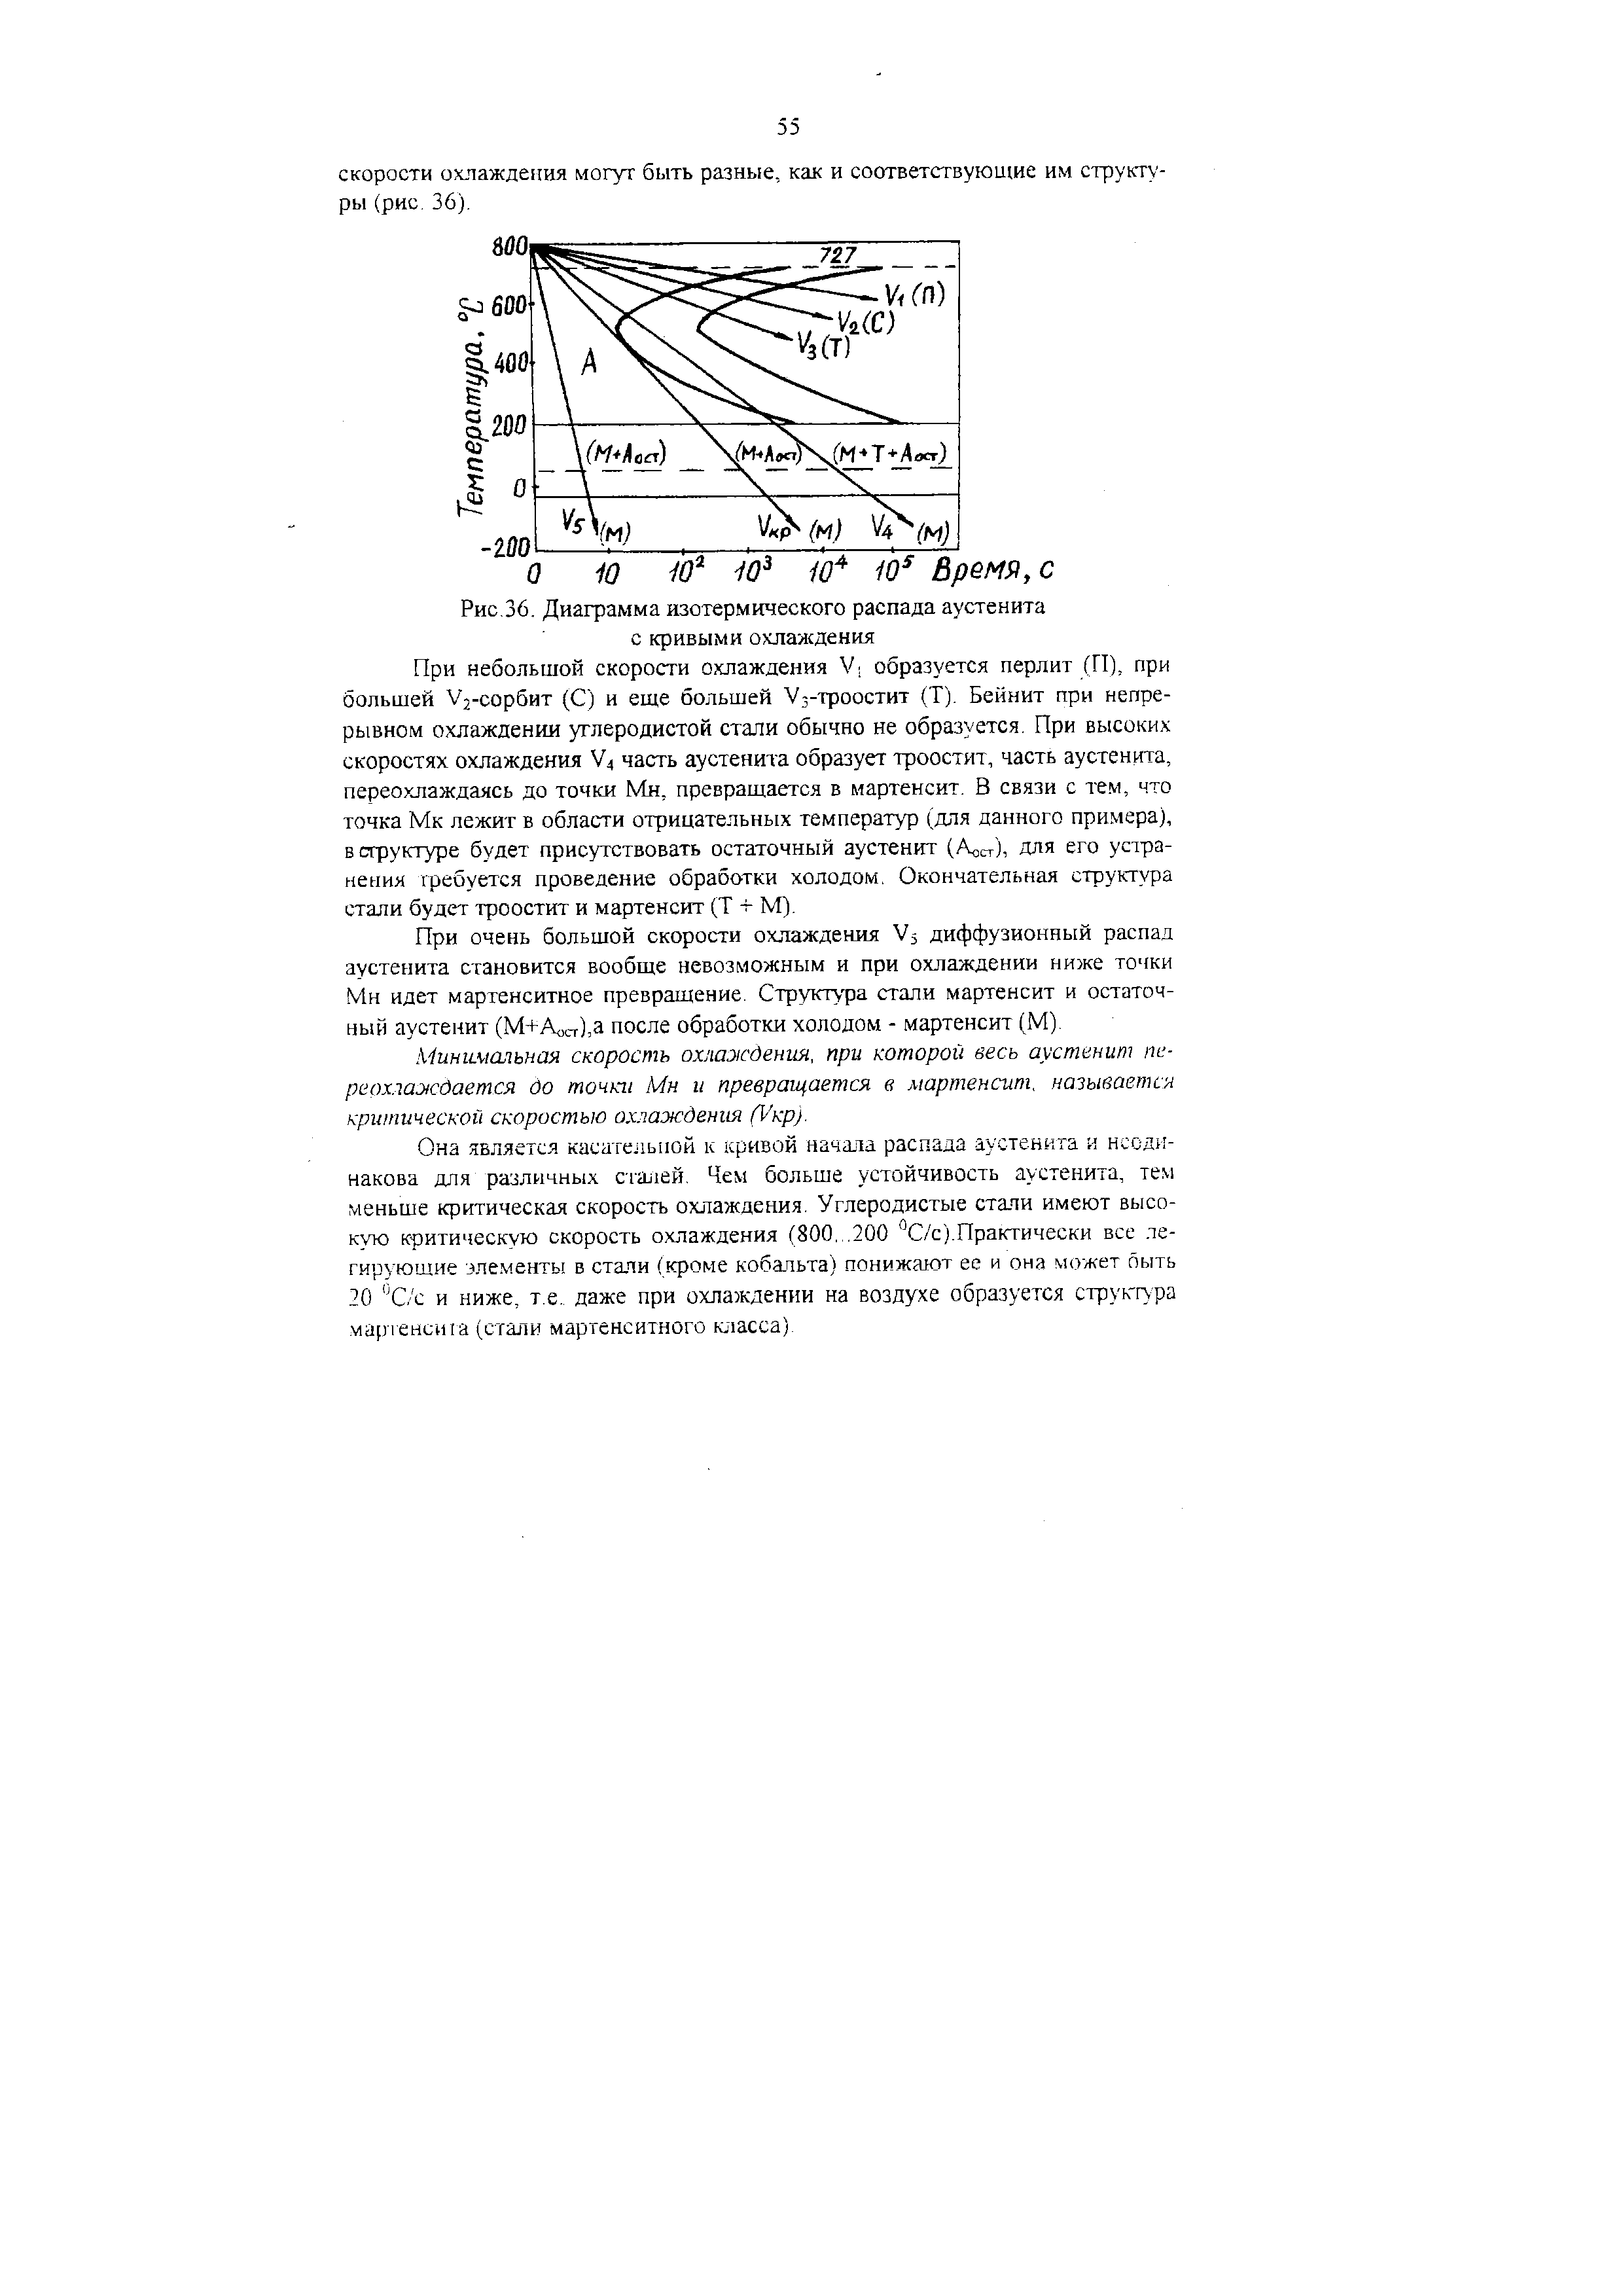 Рис.36. Диаграмма изотермического распада аустенита с кривыми охлаждения
